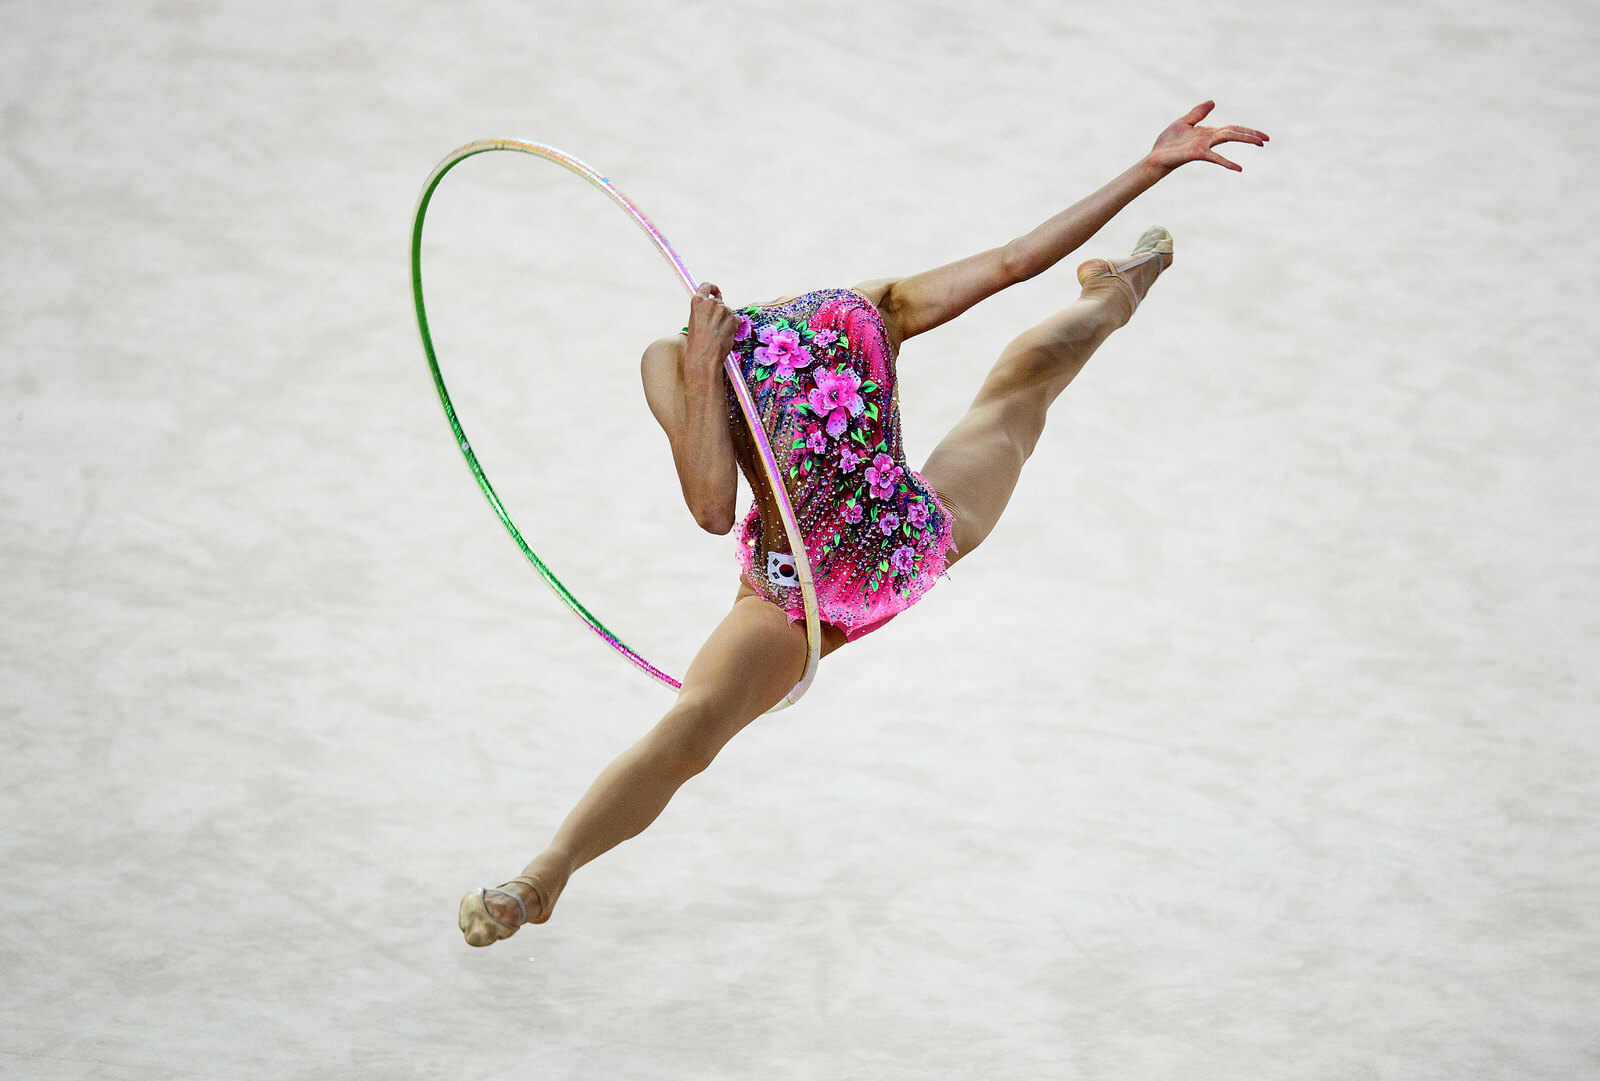 Hình ảnh của Chaewoon Kim - vận động viên thể dục nghệ thuật người Hàn Quốc ngày 21/7